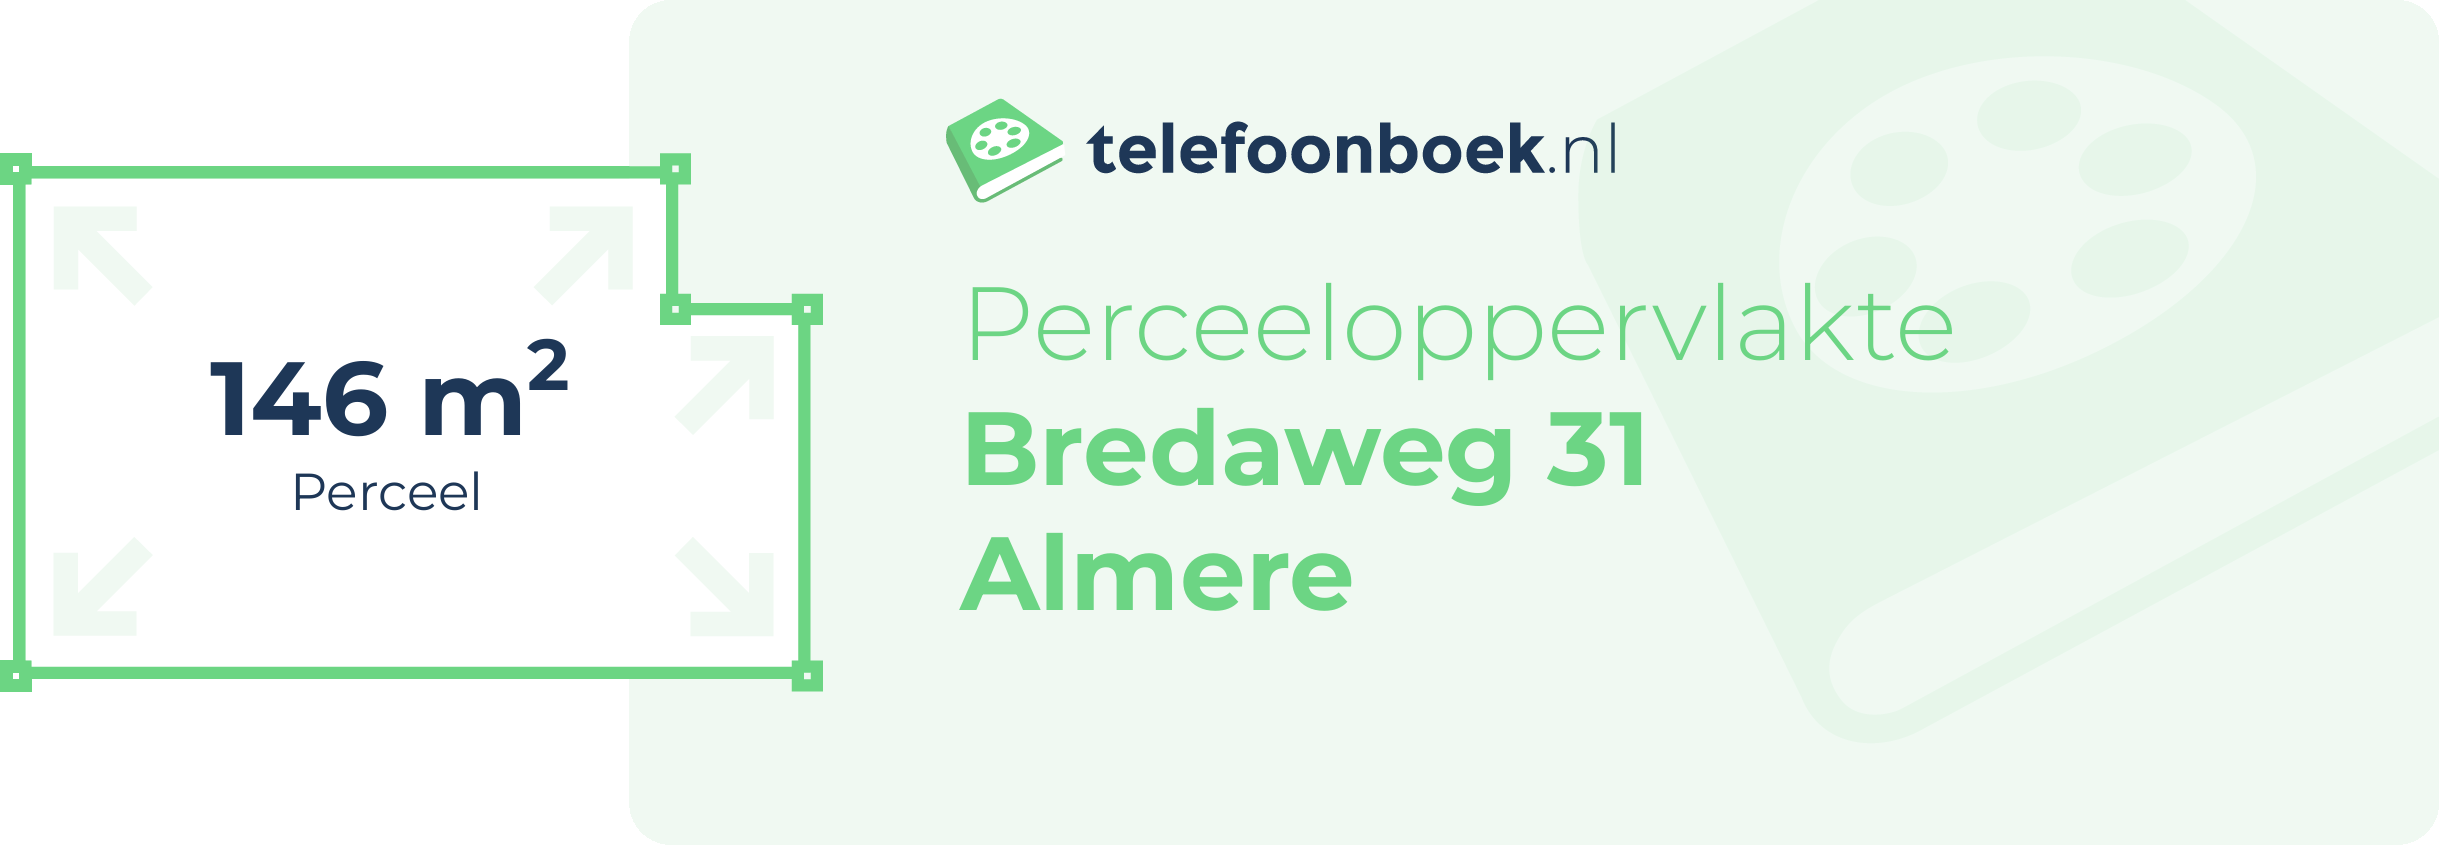 Perceeloppervlakte Bredaweg 31 Almere